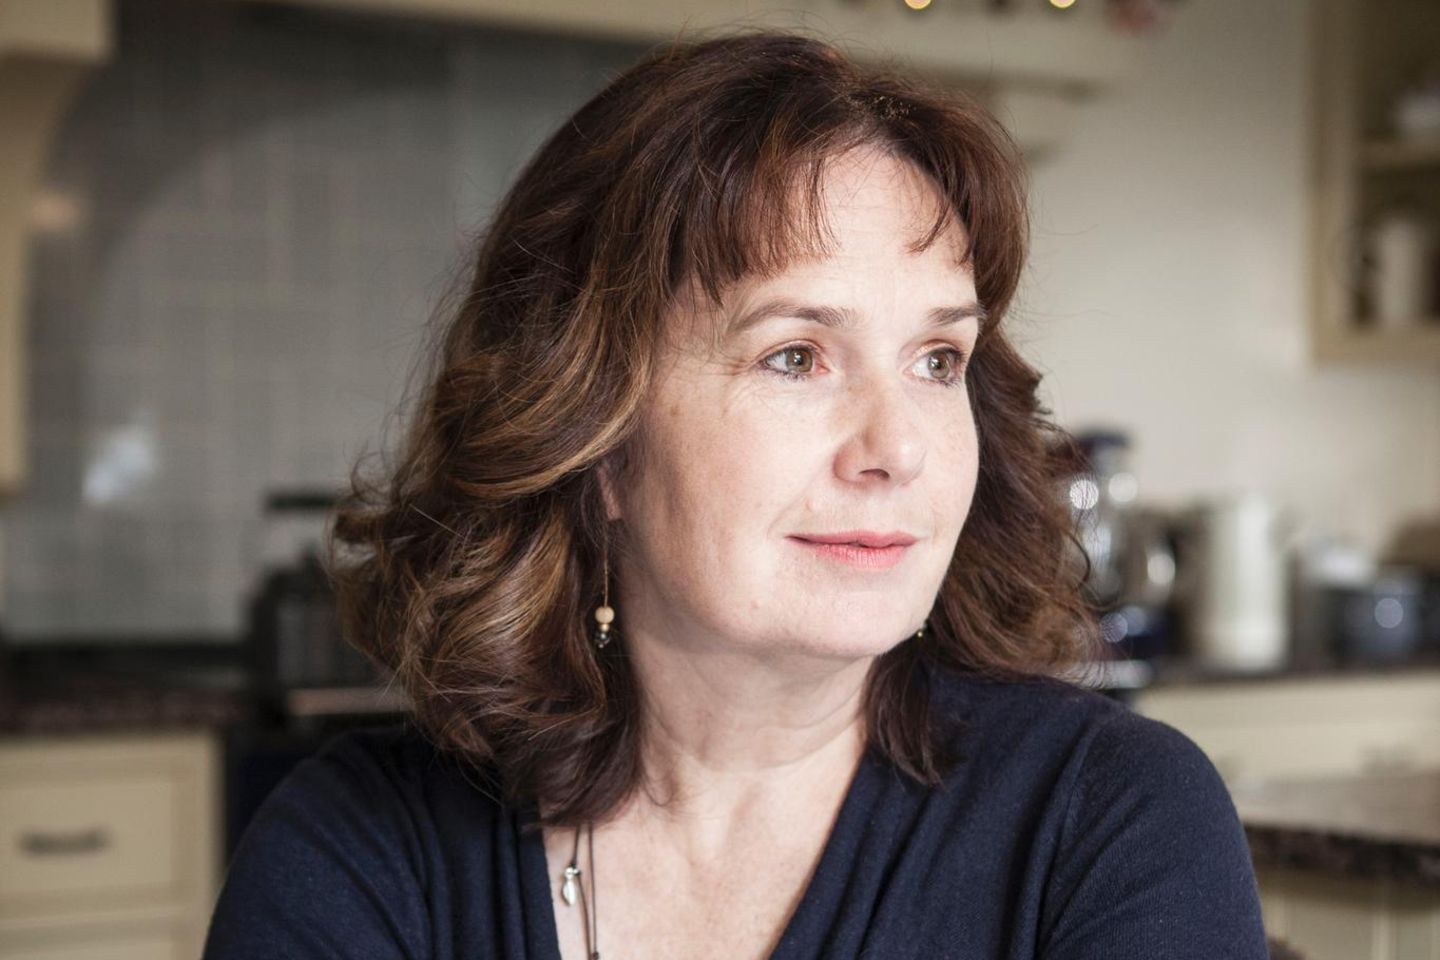 England: Julie Deane, Gründerin von The Cambridge Satchel Company